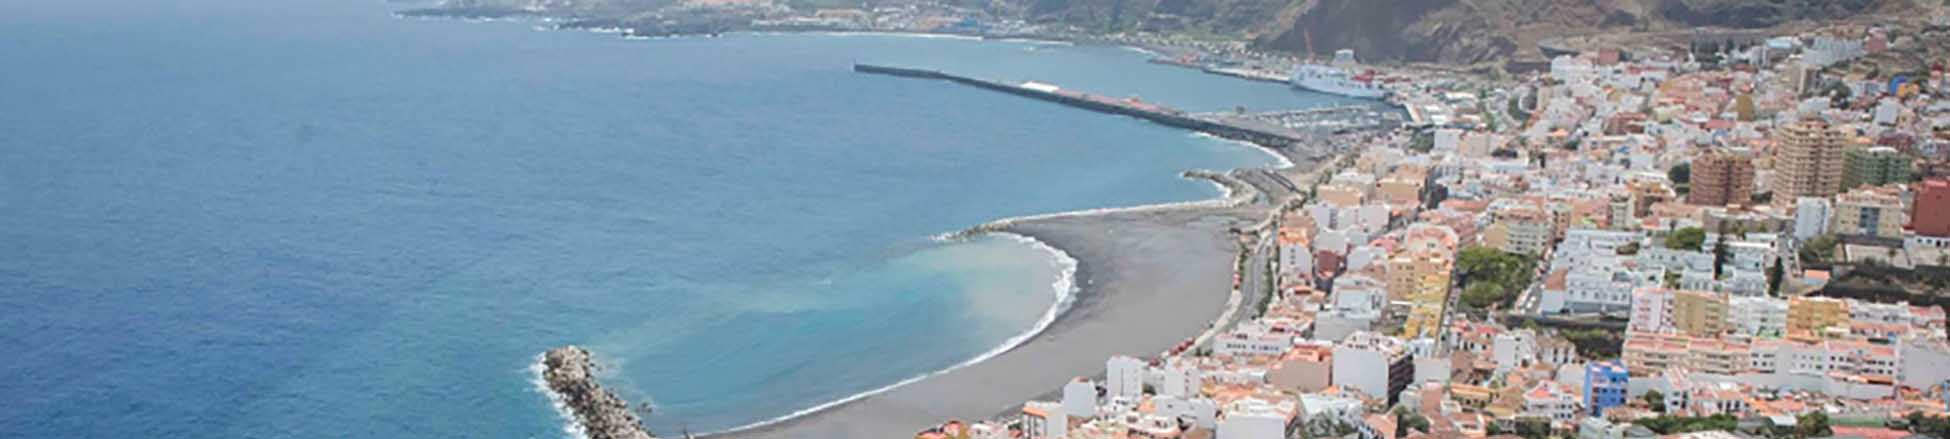 Immagine del porto di arrivo La Palma (S.C. de la Palma) per la rotta traghetto Tenerife (Los Cristianos) - La Palma (S.C. de la Palma)